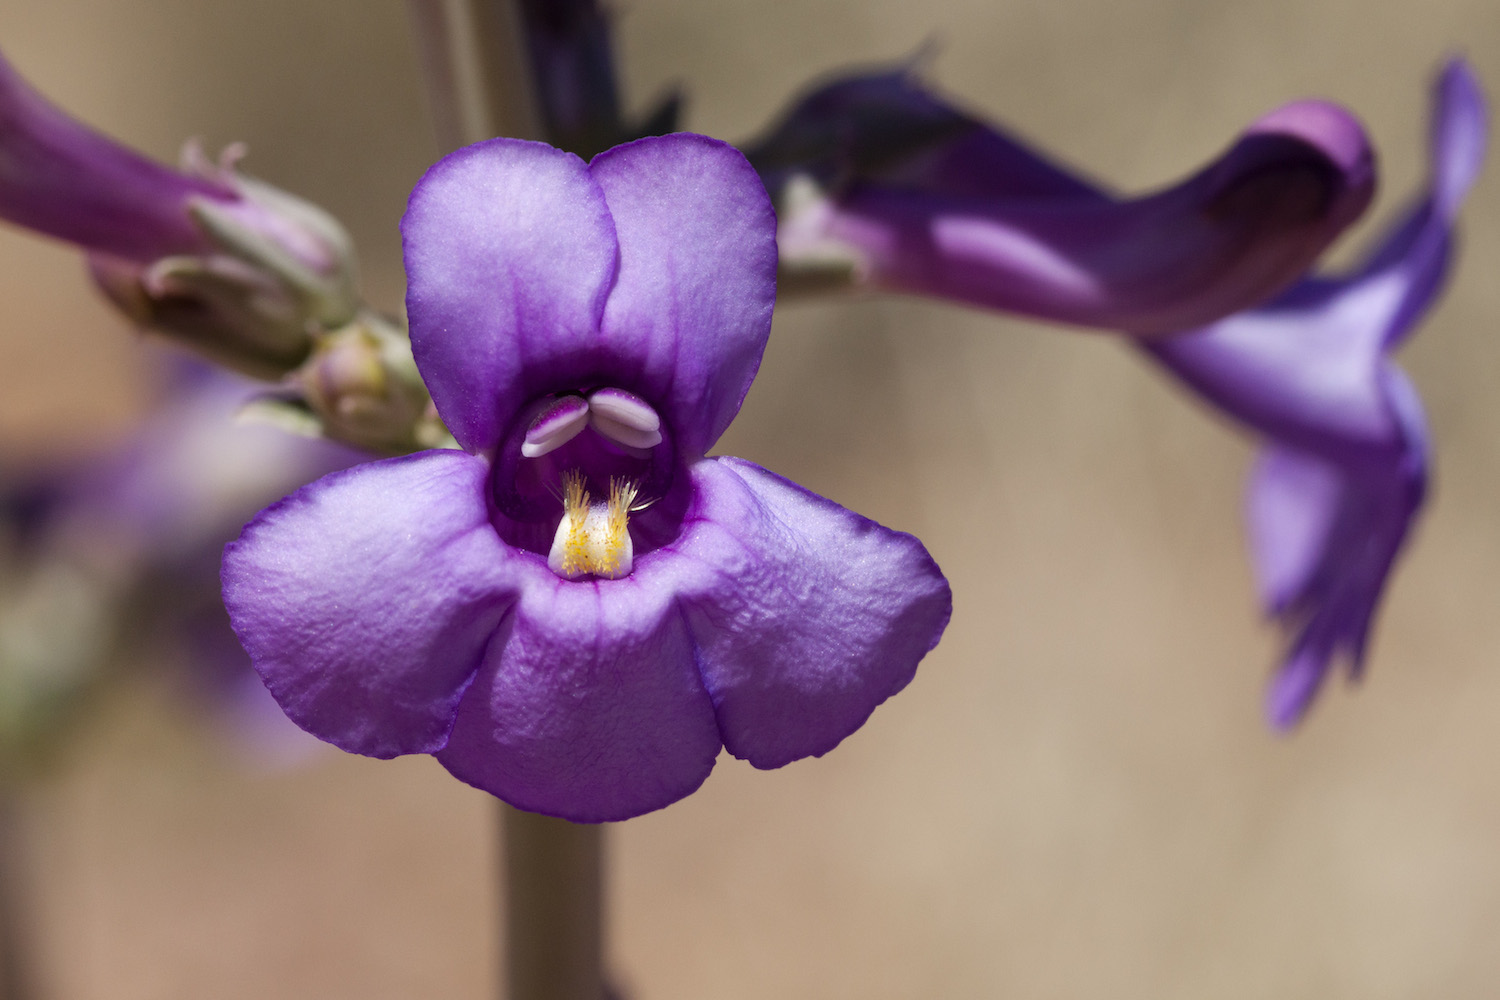 Tubular purple flowers of Penstemon fendleri